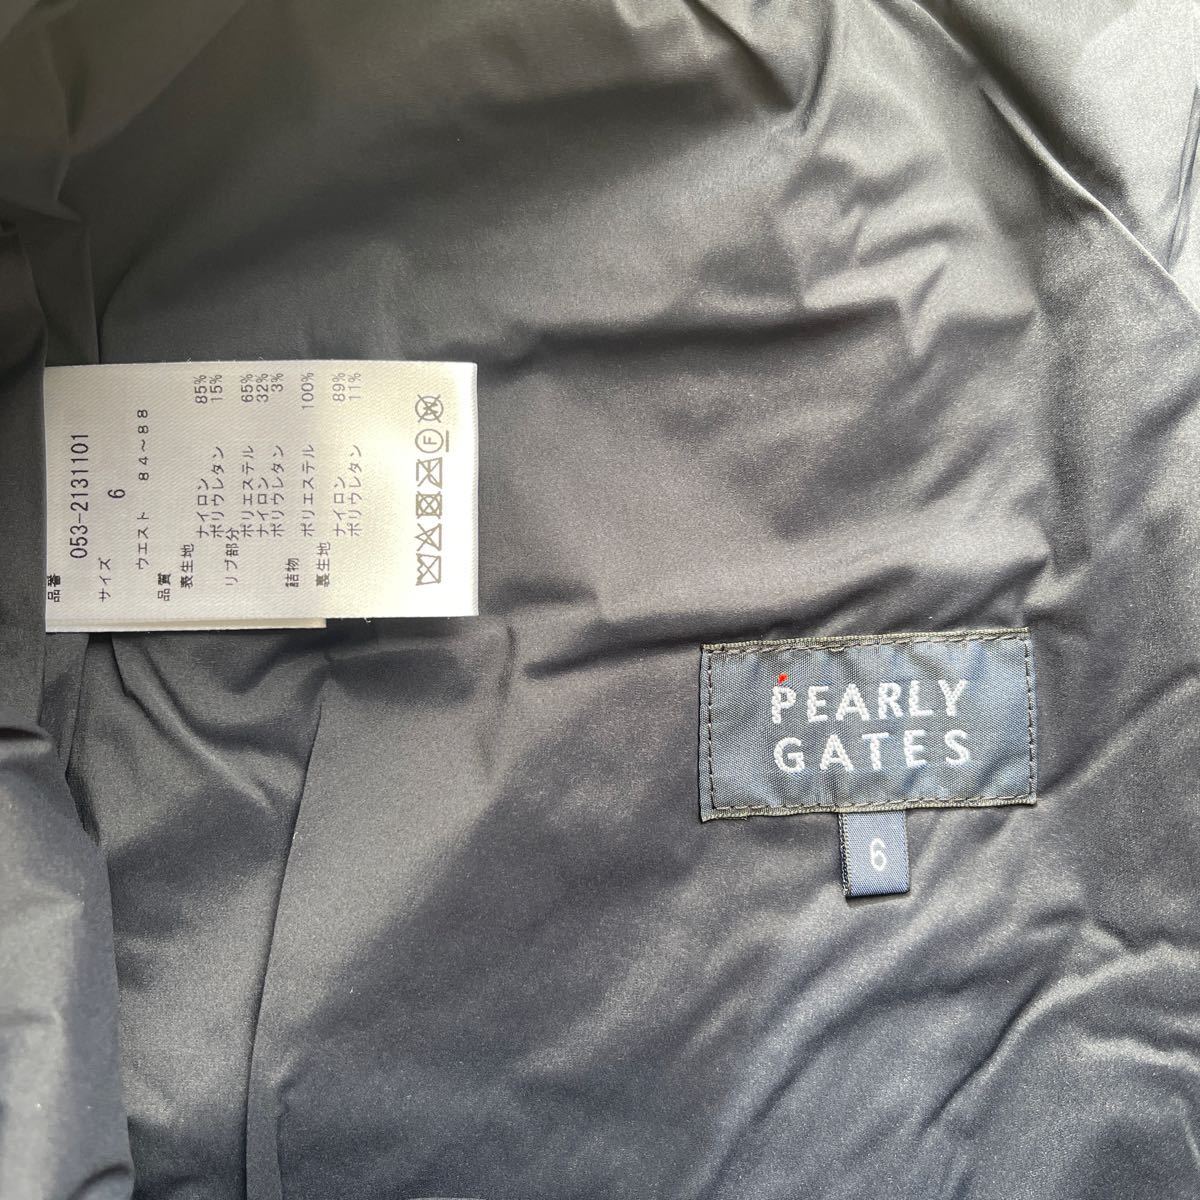  бесплатная доставка PEARLY GATES Pearly Gates MENS с хлопком брюки PRIMALOFT защищающий от холода тепловое хранение теплоизоляция водоотталкивающий .TECHNO STRETCH восстановление . толчок задний D.Navy( сильно сниженная цена 6) новый товар 